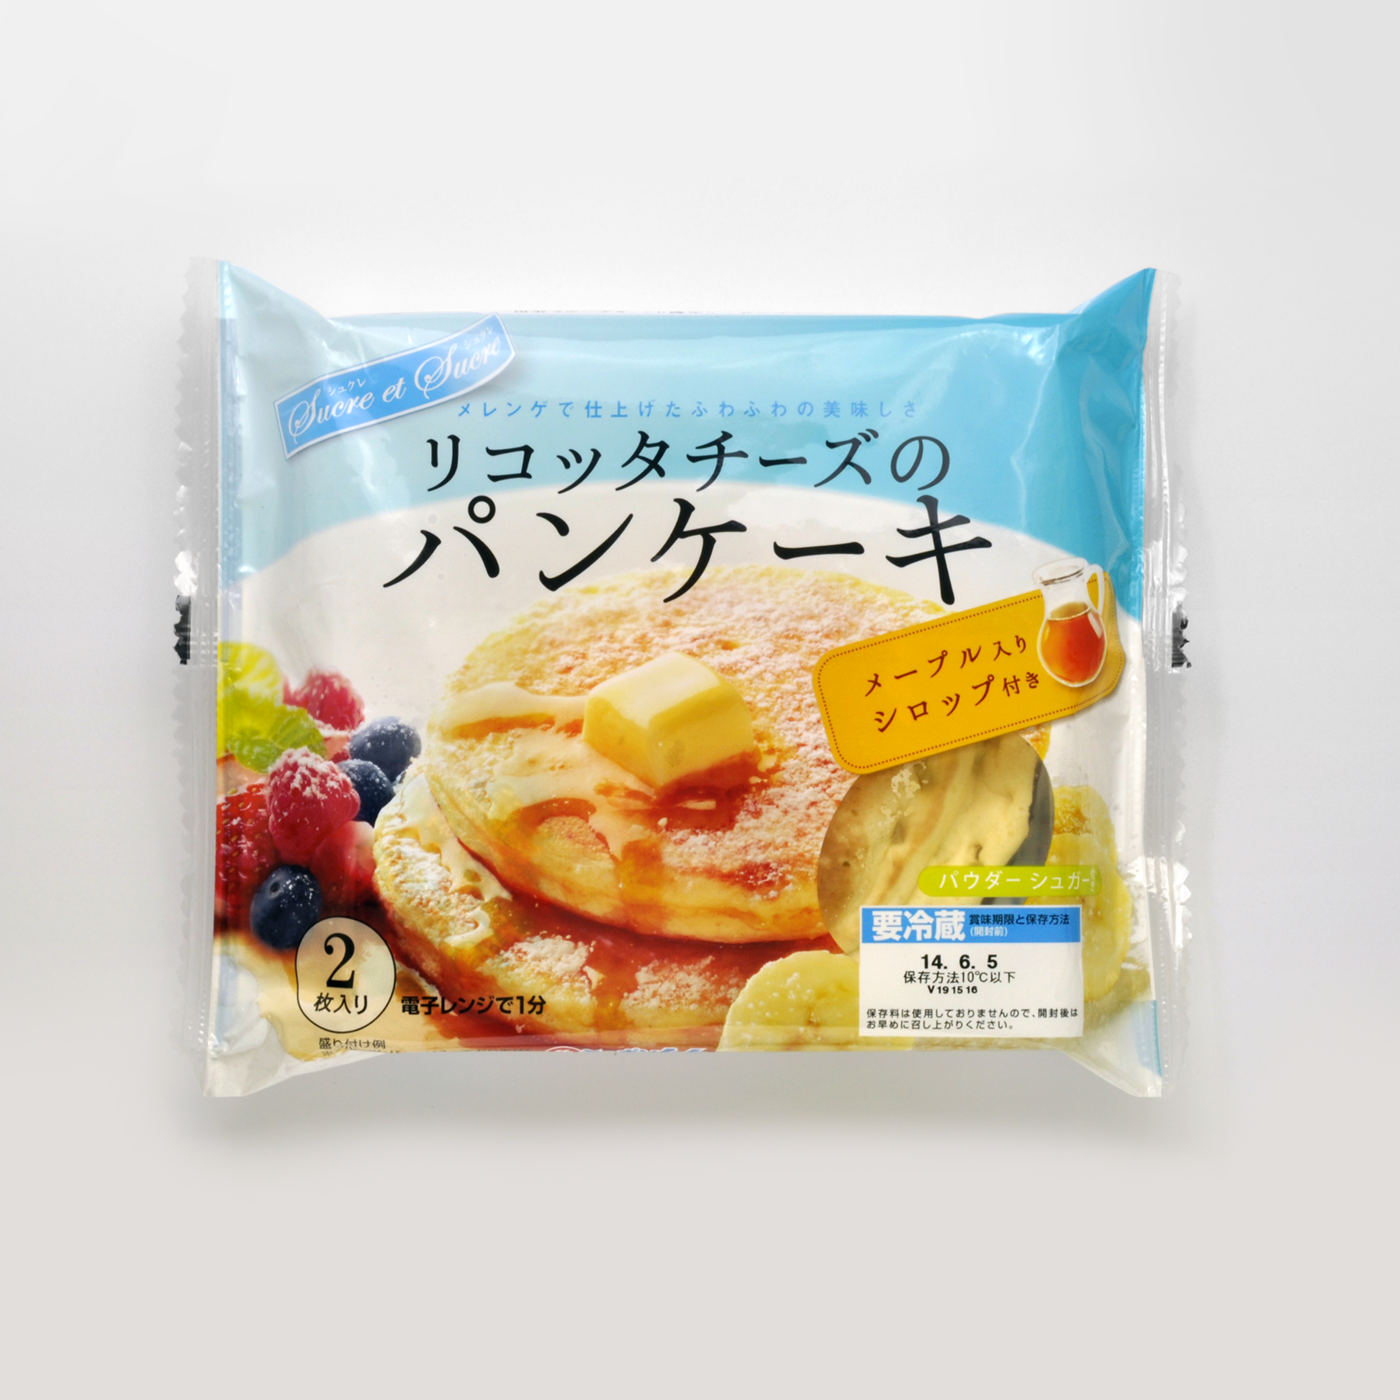 リコッタチーズのパンケーキ (2013)